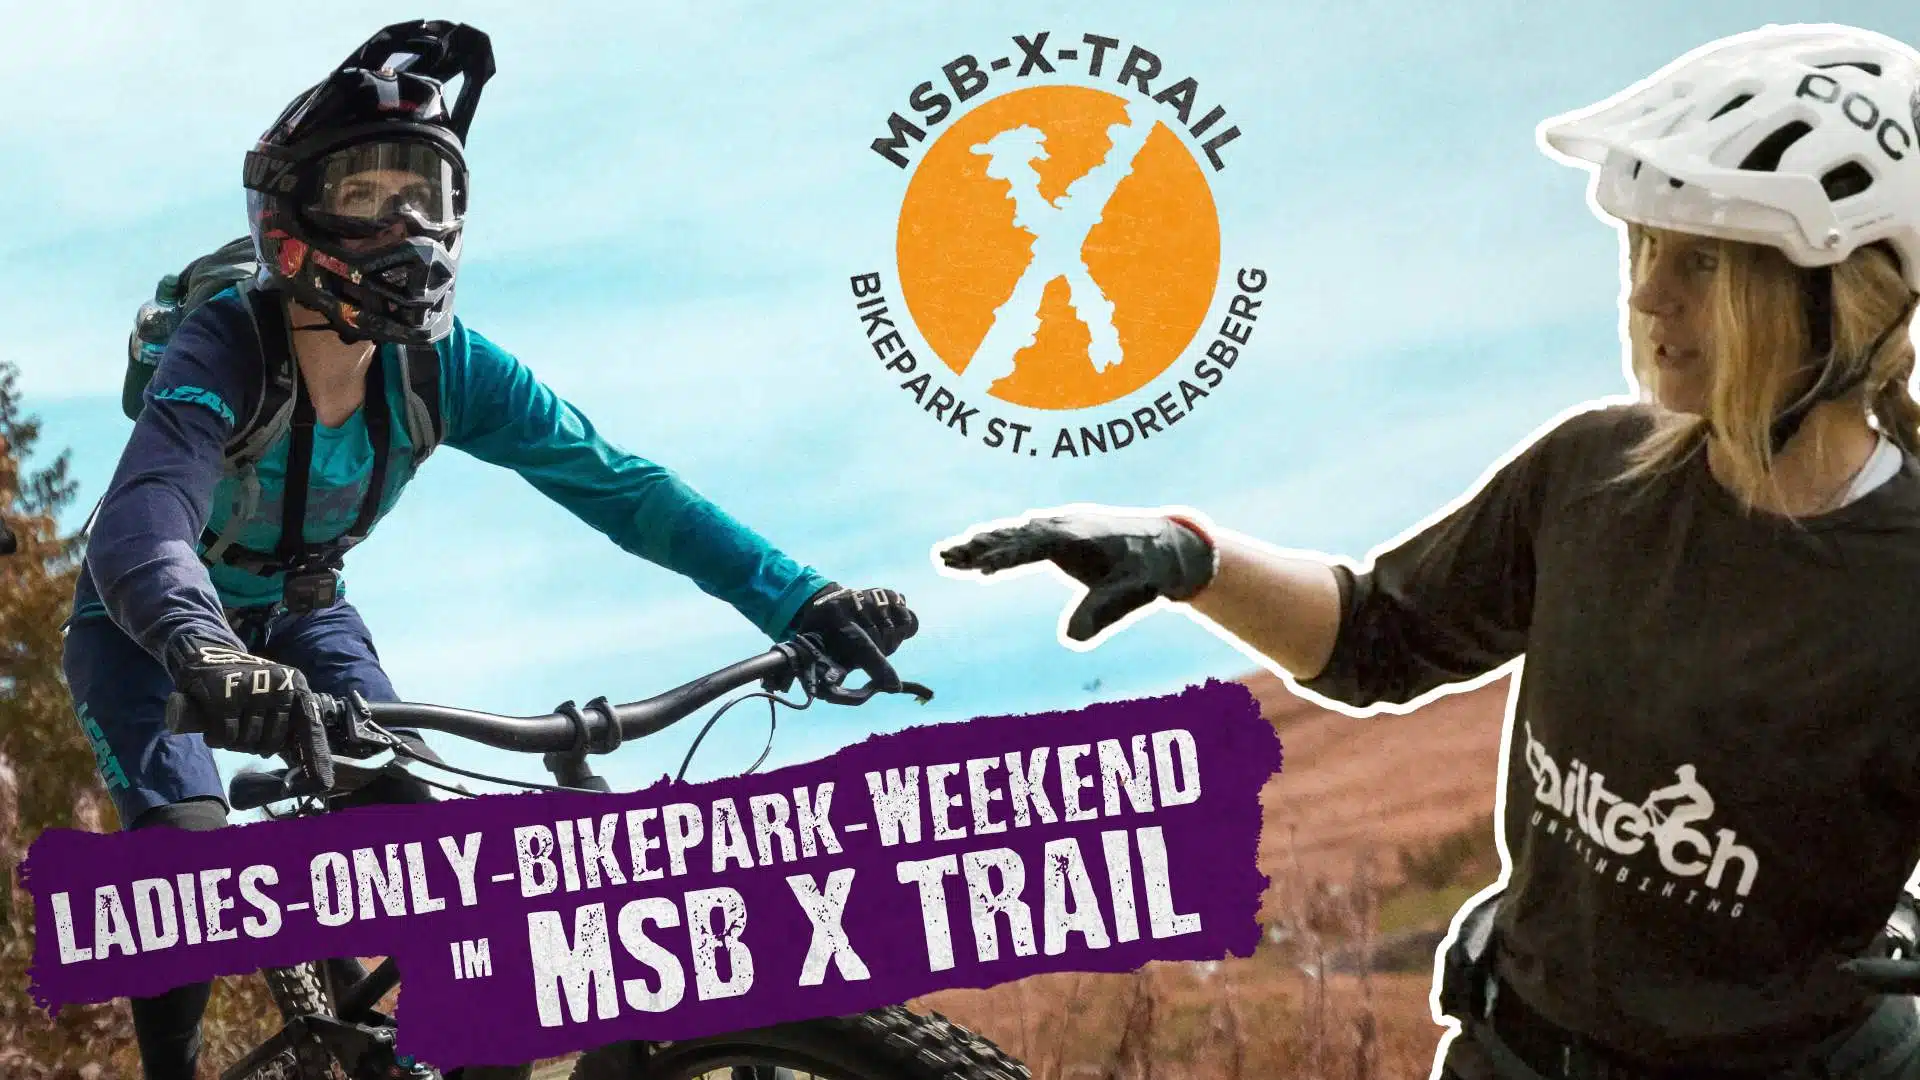 Harz-BnB Werkmeister - Blog-Titelbild - Event-Recap Ladies-Only-Bikepark-Wochenende im MSB X Trail-Bikepark